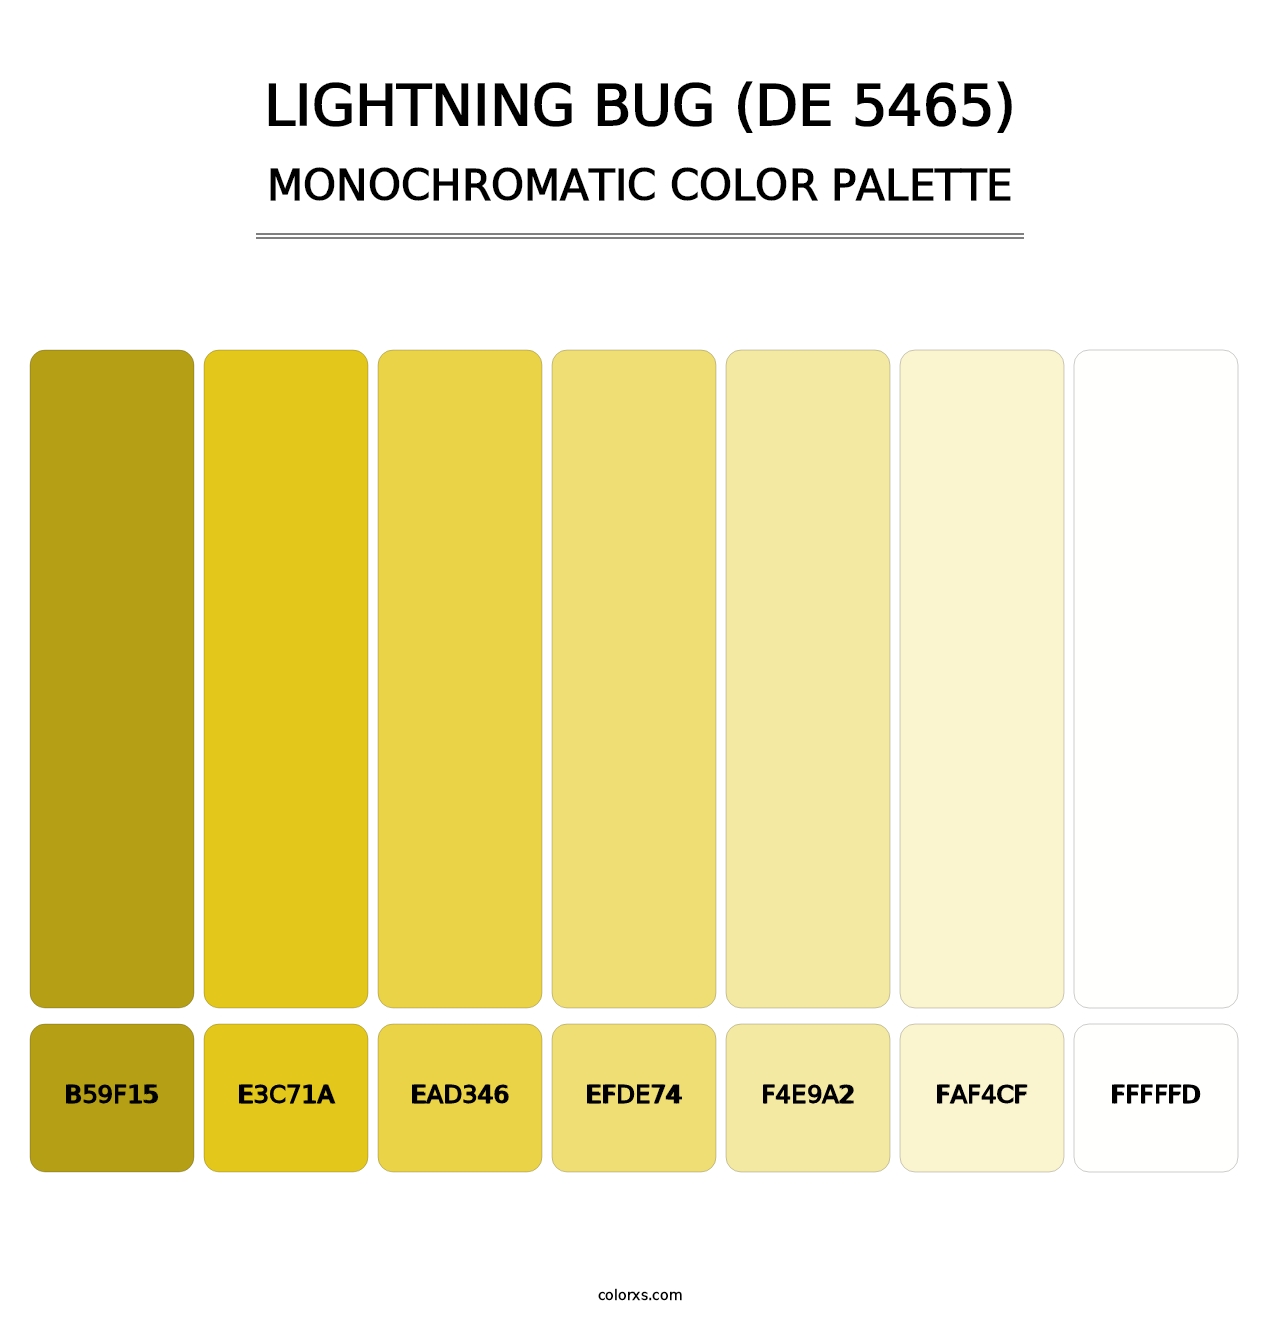 Lightning Bug (DE 5465) - Monochromatic Color Palette